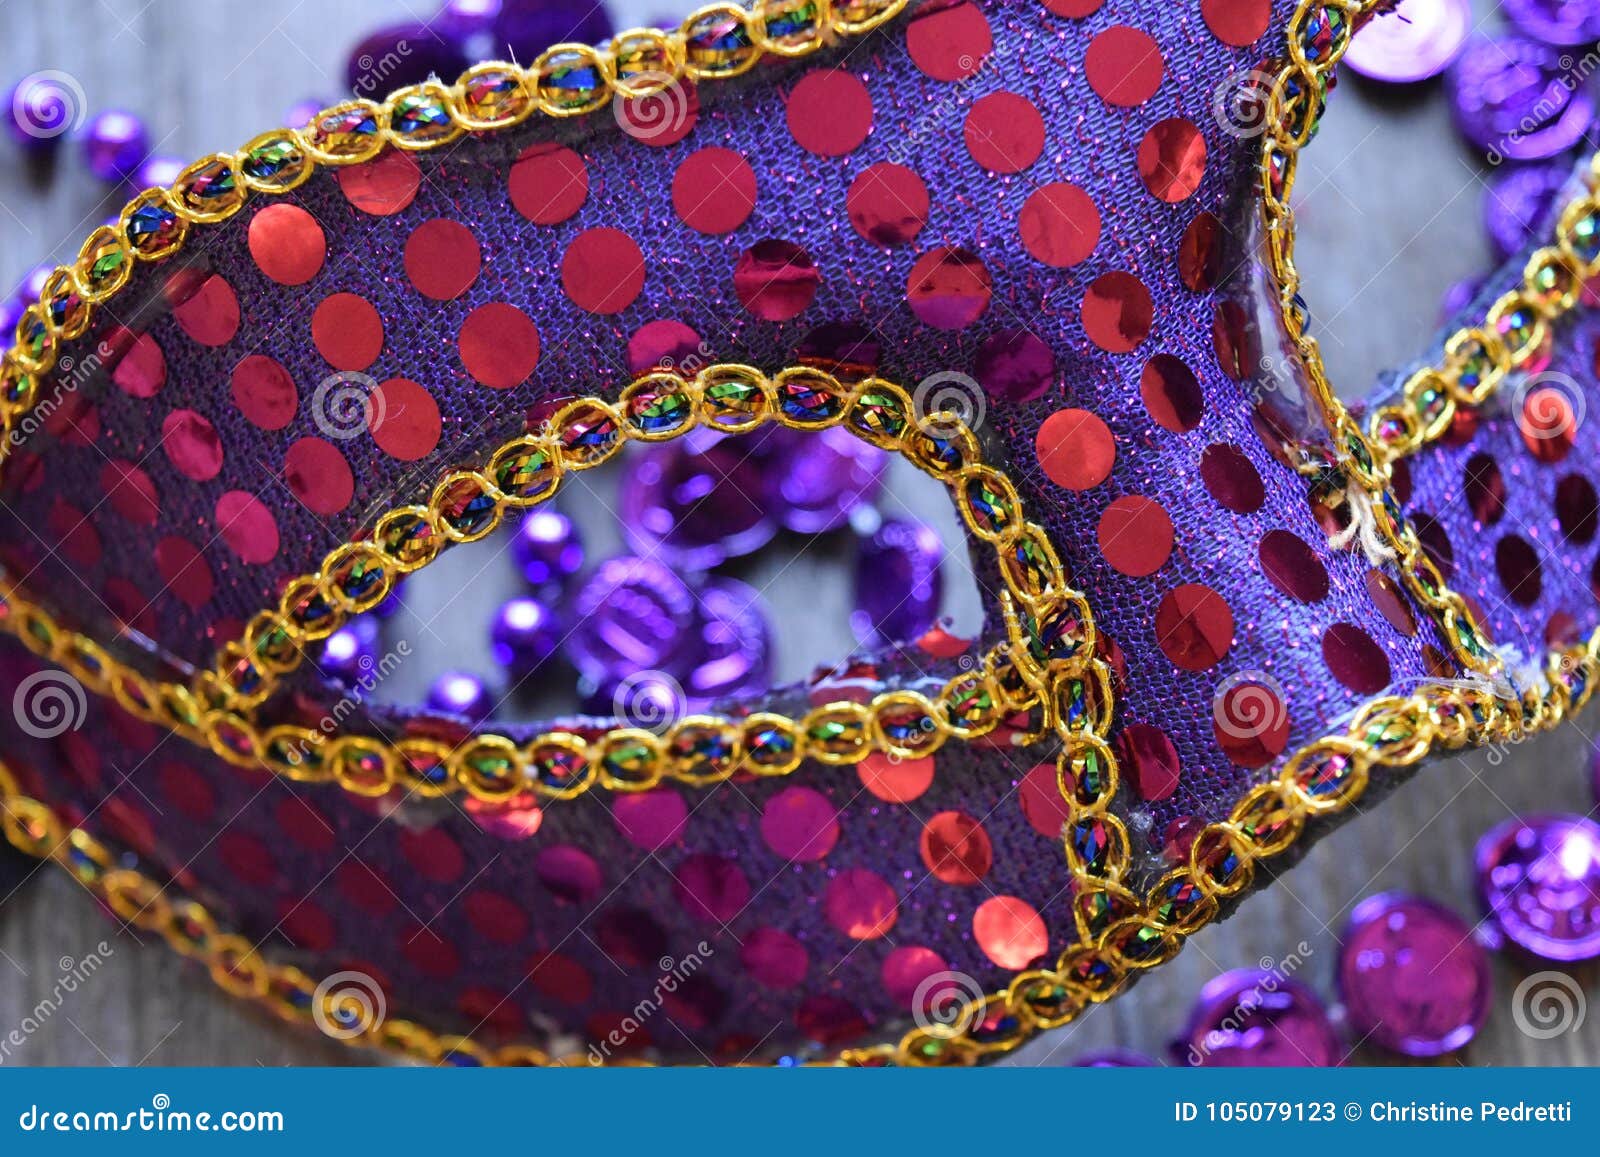 Μάσκες της Mardi Gras με τις χάντρες σε ένα ξύλινο υπόβαθρο. Εξαρτήματα για έναν παχύ εορτασμό Τρίτης